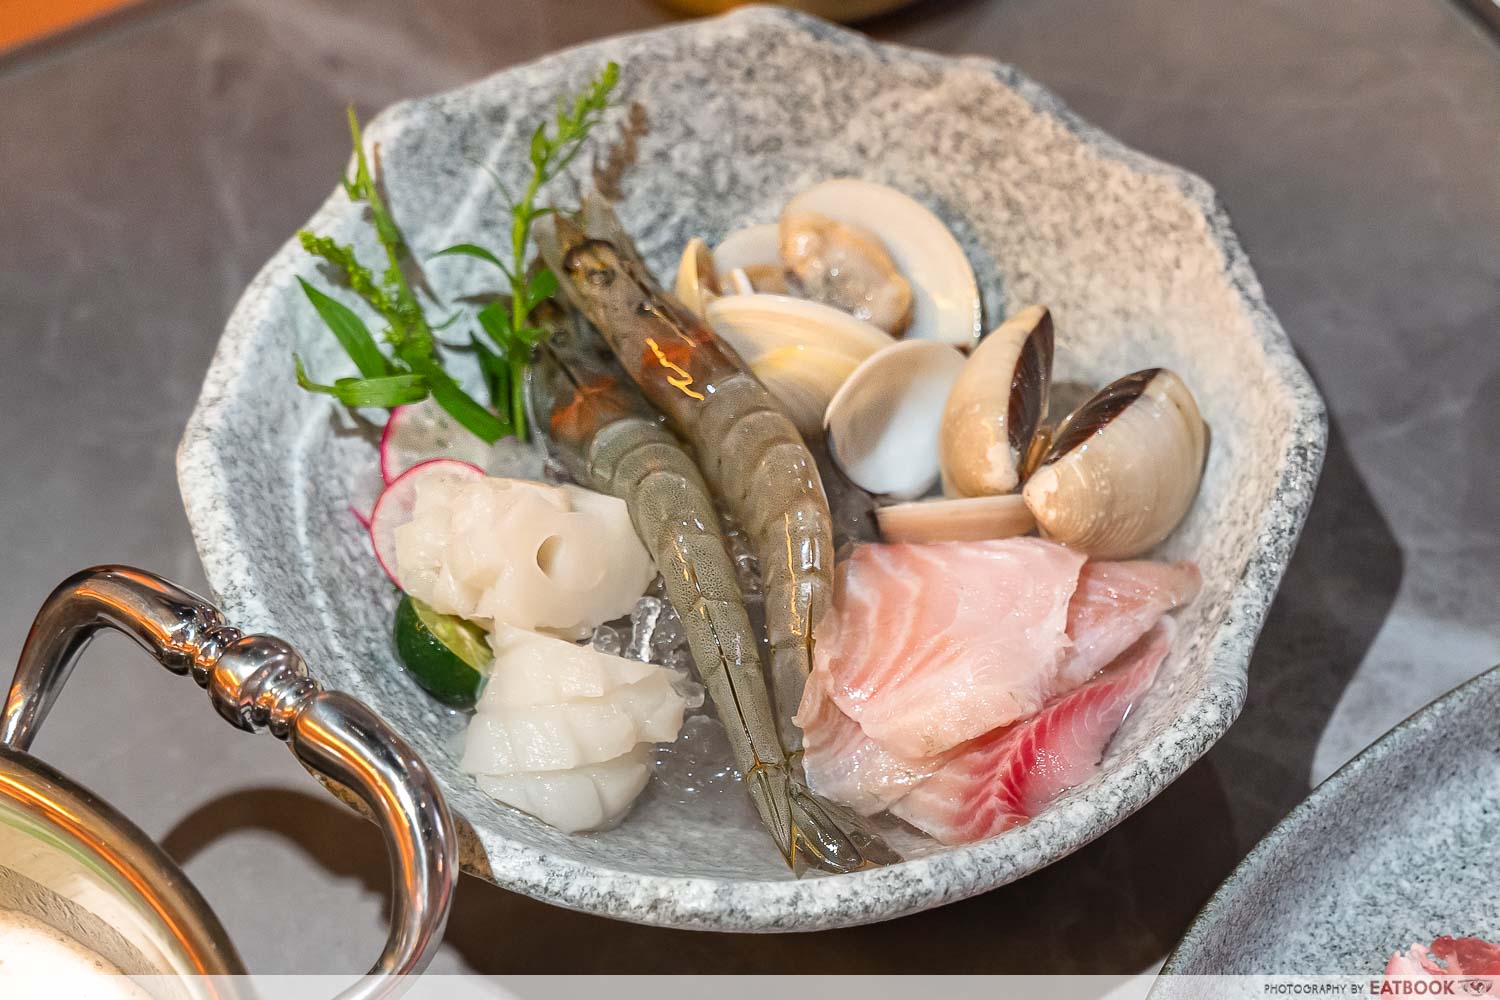 xiabu xiabu - seafood platter